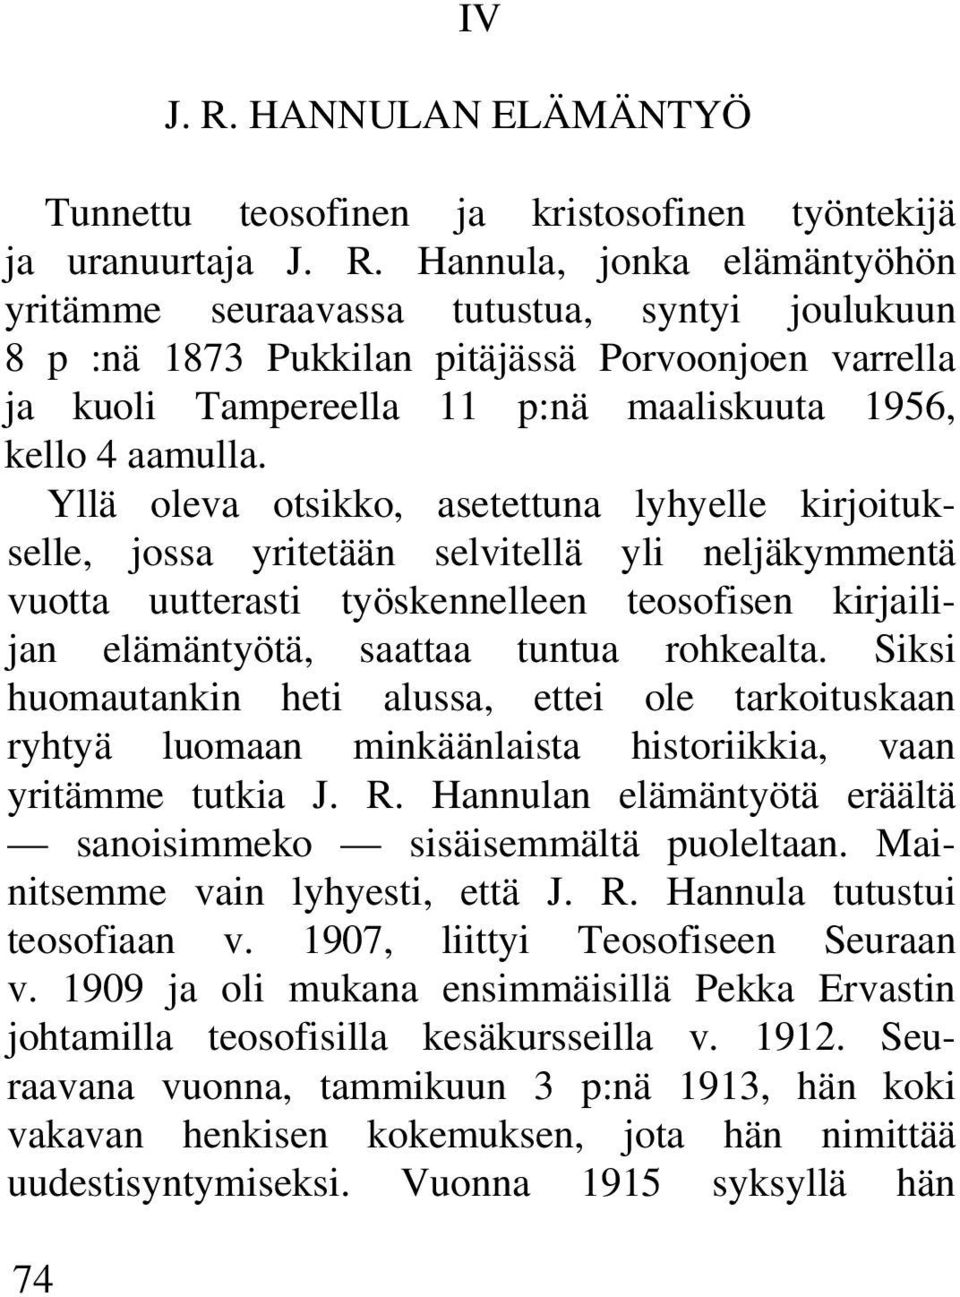 Hannula, jonka elämäntyöhön yritämme seuraavassa tutustua, syntyi joulukuun 8 p :nä 1873 Pukkilan pitäjässä Porvoonjoen varrella ja kuoli Tampereella 11 p:nä maaliskuuta 1956, kello 4 aamulla.